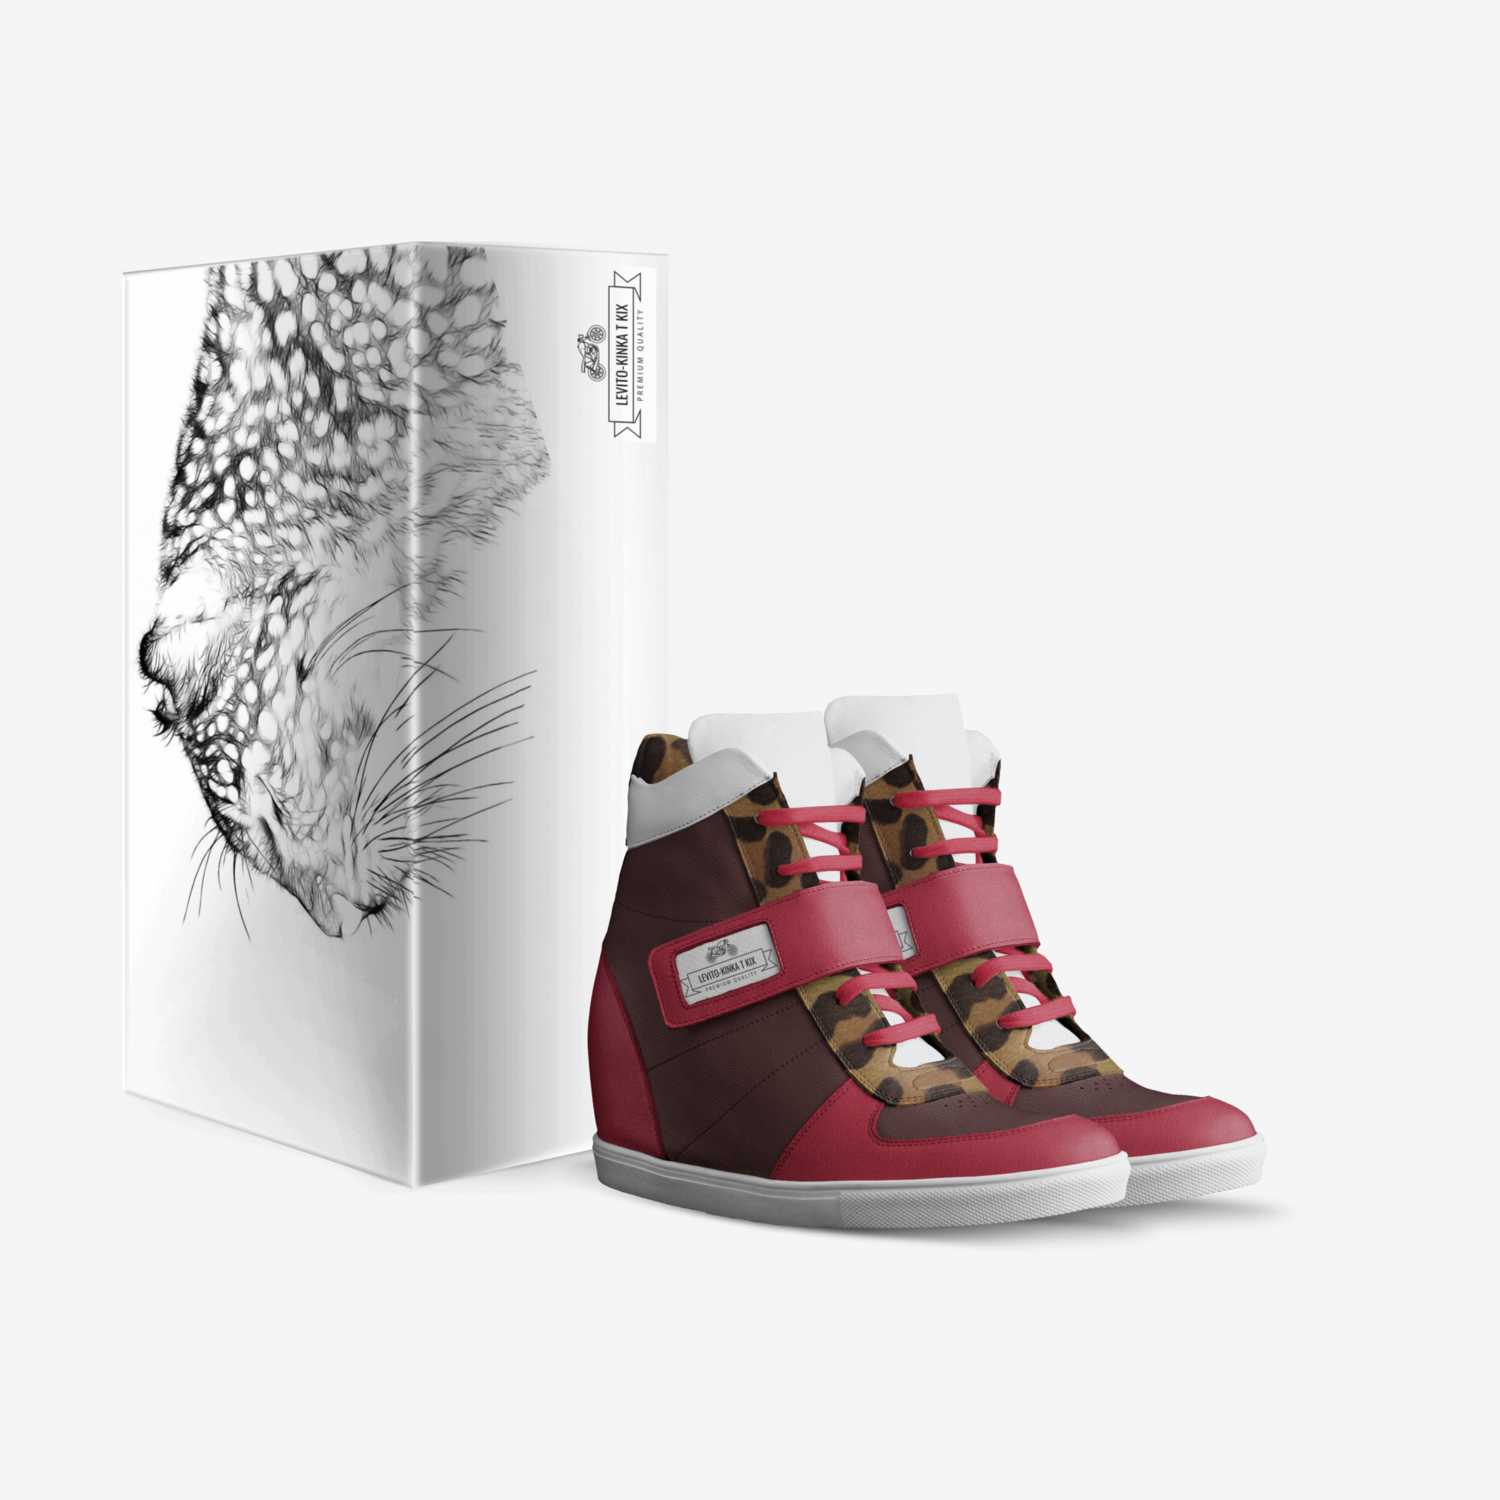 Levito-Kinka T Kix custom made in Italy shoes by Kinka T Kix | Box view